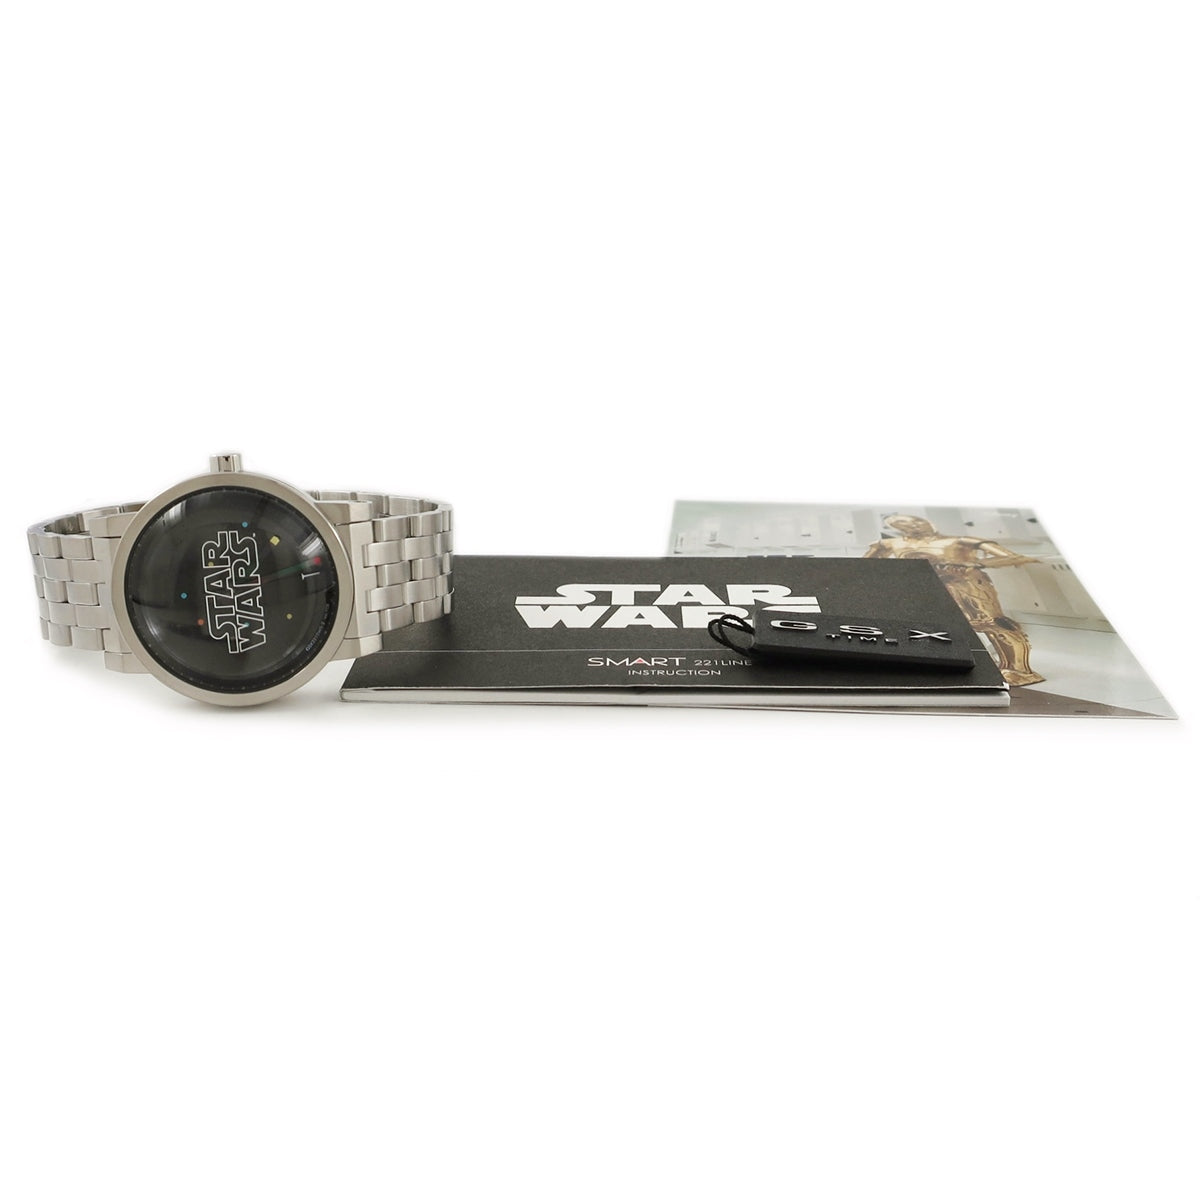 ジーエスエックス GSX スターウォーズコレクション ロゴモデル GSX221SWS-2 自動巻き メンズ 新品 黒 ドーム型ガラス 限定